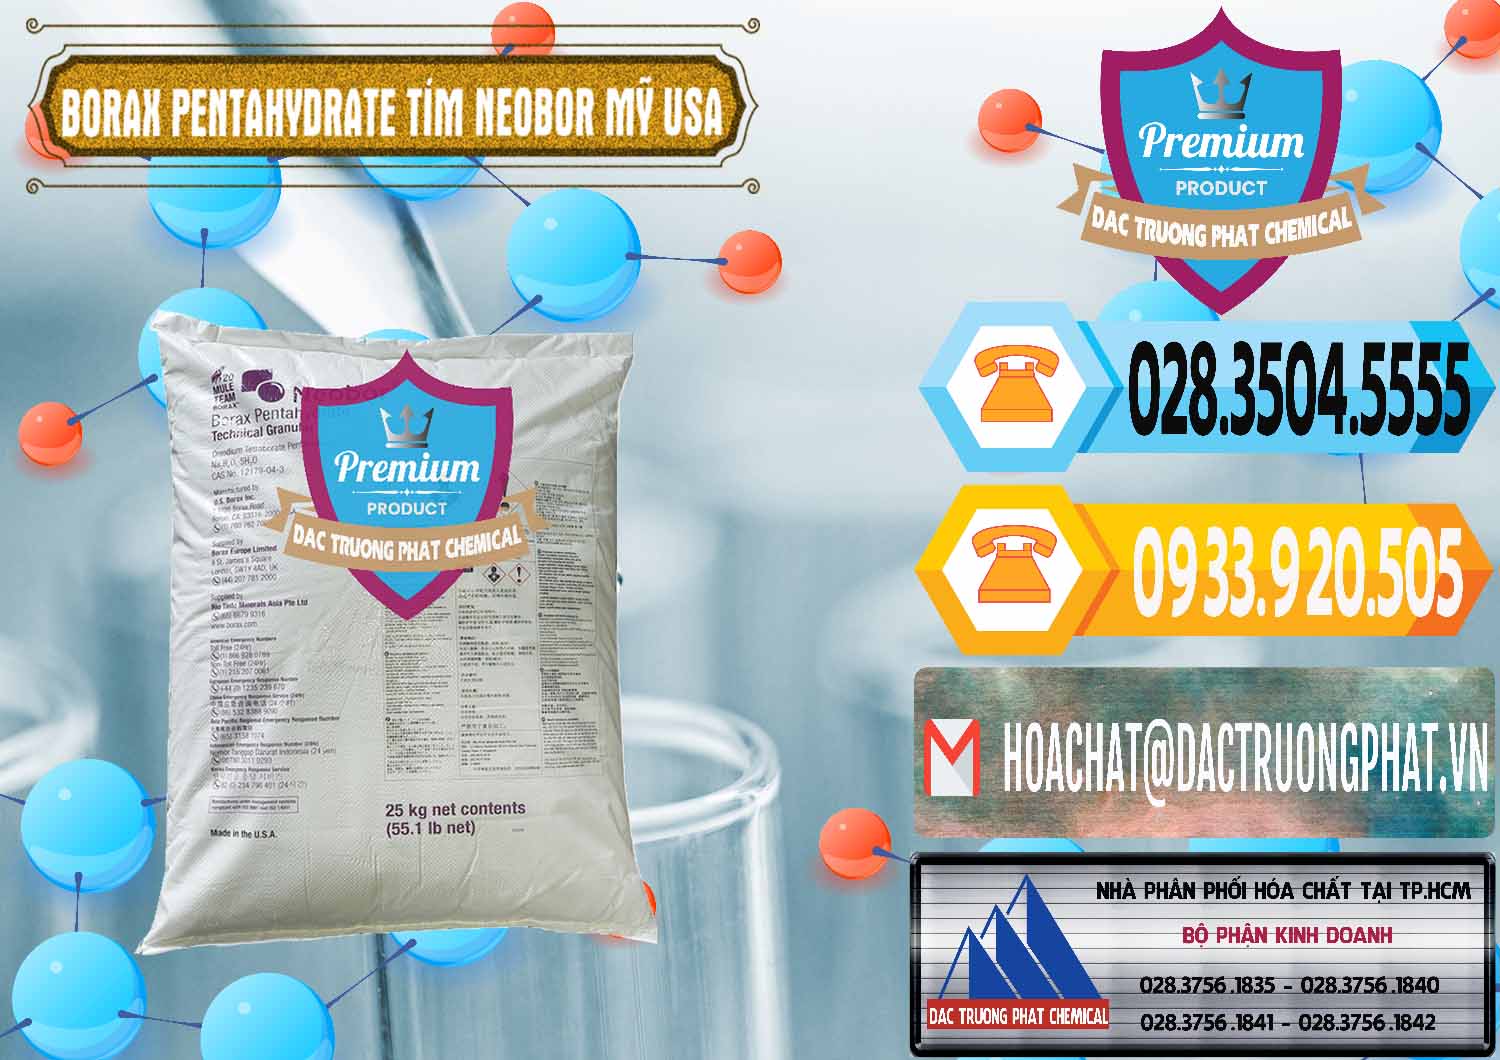 Cty chuyên bán ( phân phối ) Borax Pentahydrate Bao Tím Neobor TG Mỹ Usa - 0277 - Cty chuyên cung ứng và phân phối hóa chất tại TP.HCM - hoachattayrua.net